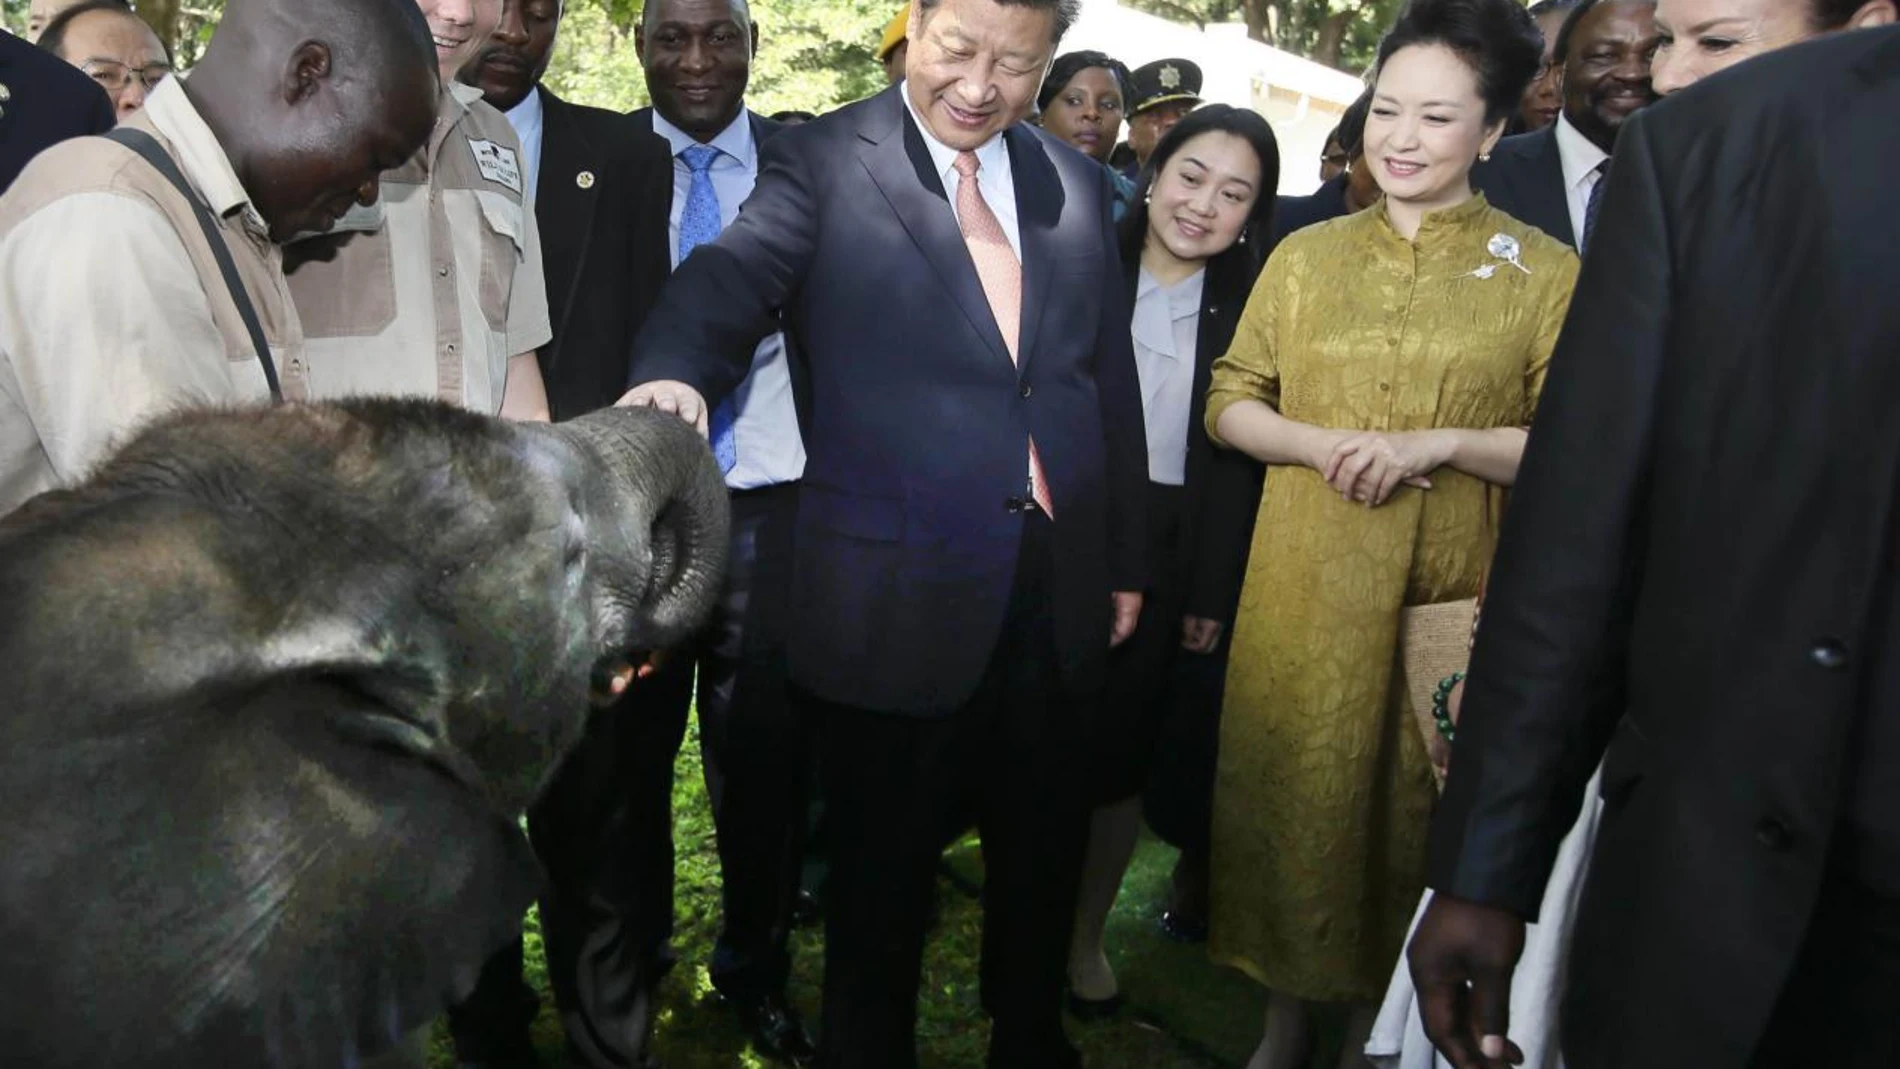 El presidente chino, Xi Jinping (centro), y su esposa Peng Liyuan visitan un santuario de vida silvestre en Harare, Zimbabwe, el 2 de diciembre de 2015